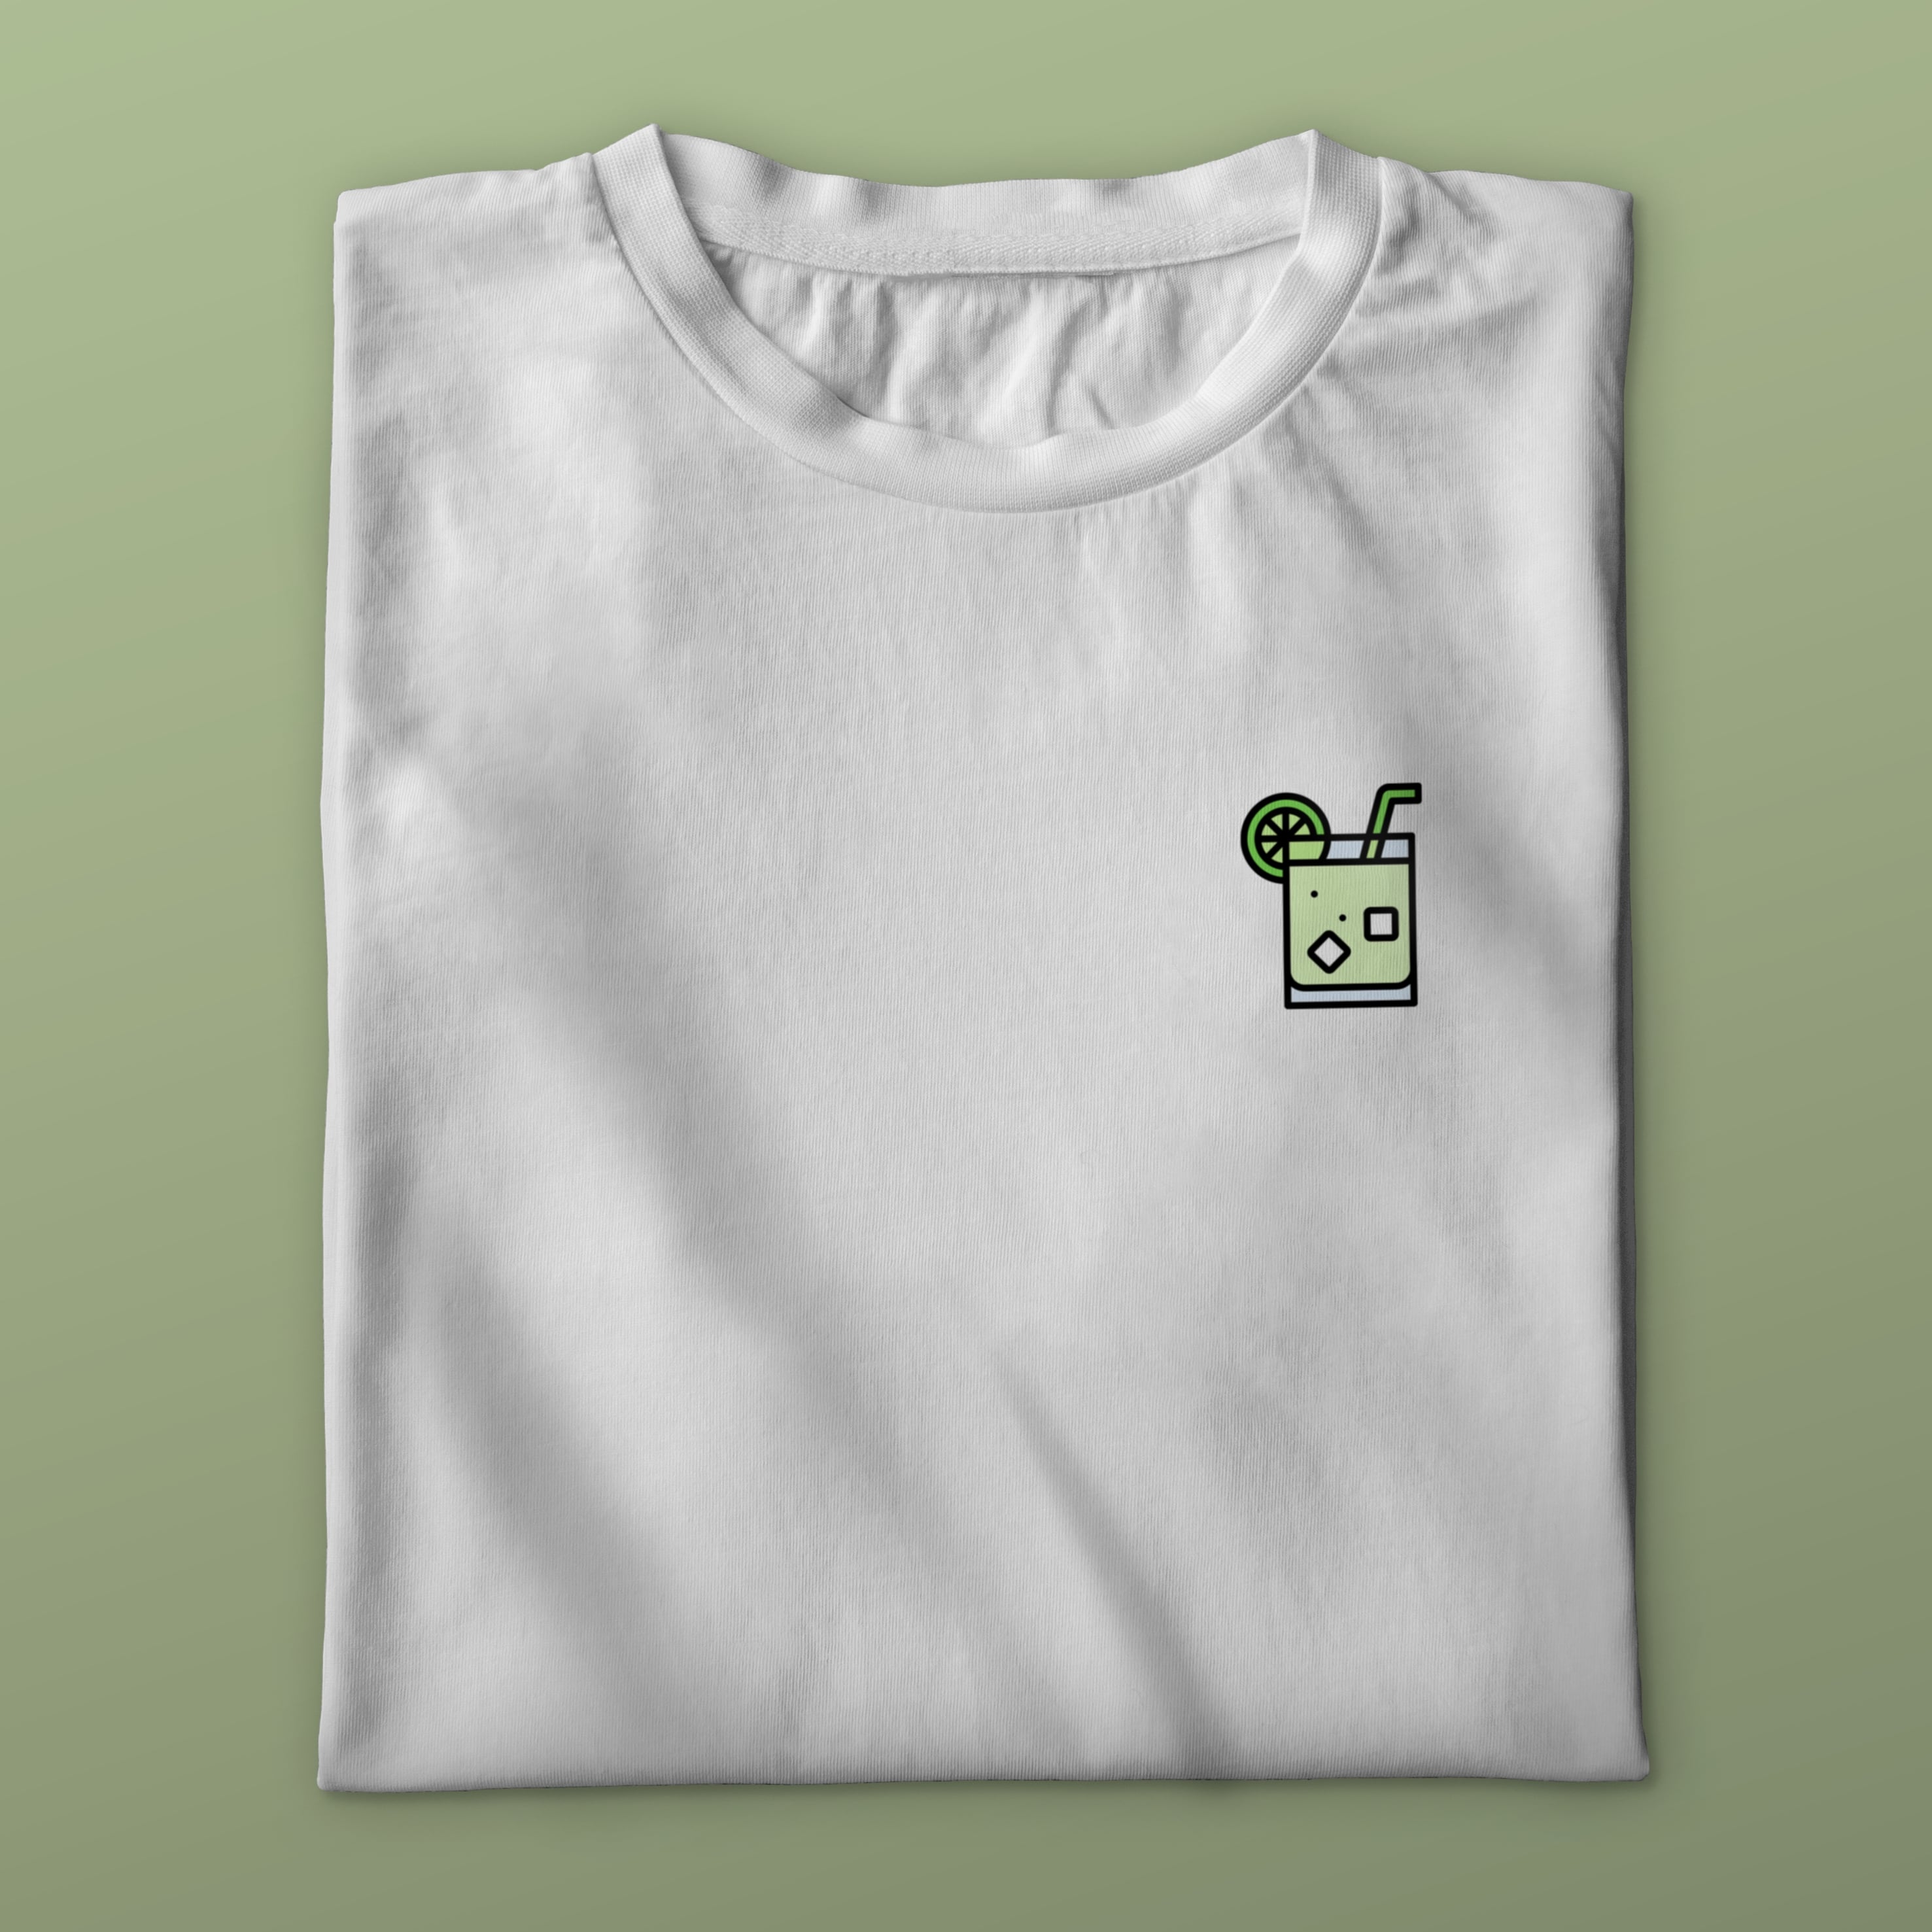 CAIPI LOGO - Premium Shirt